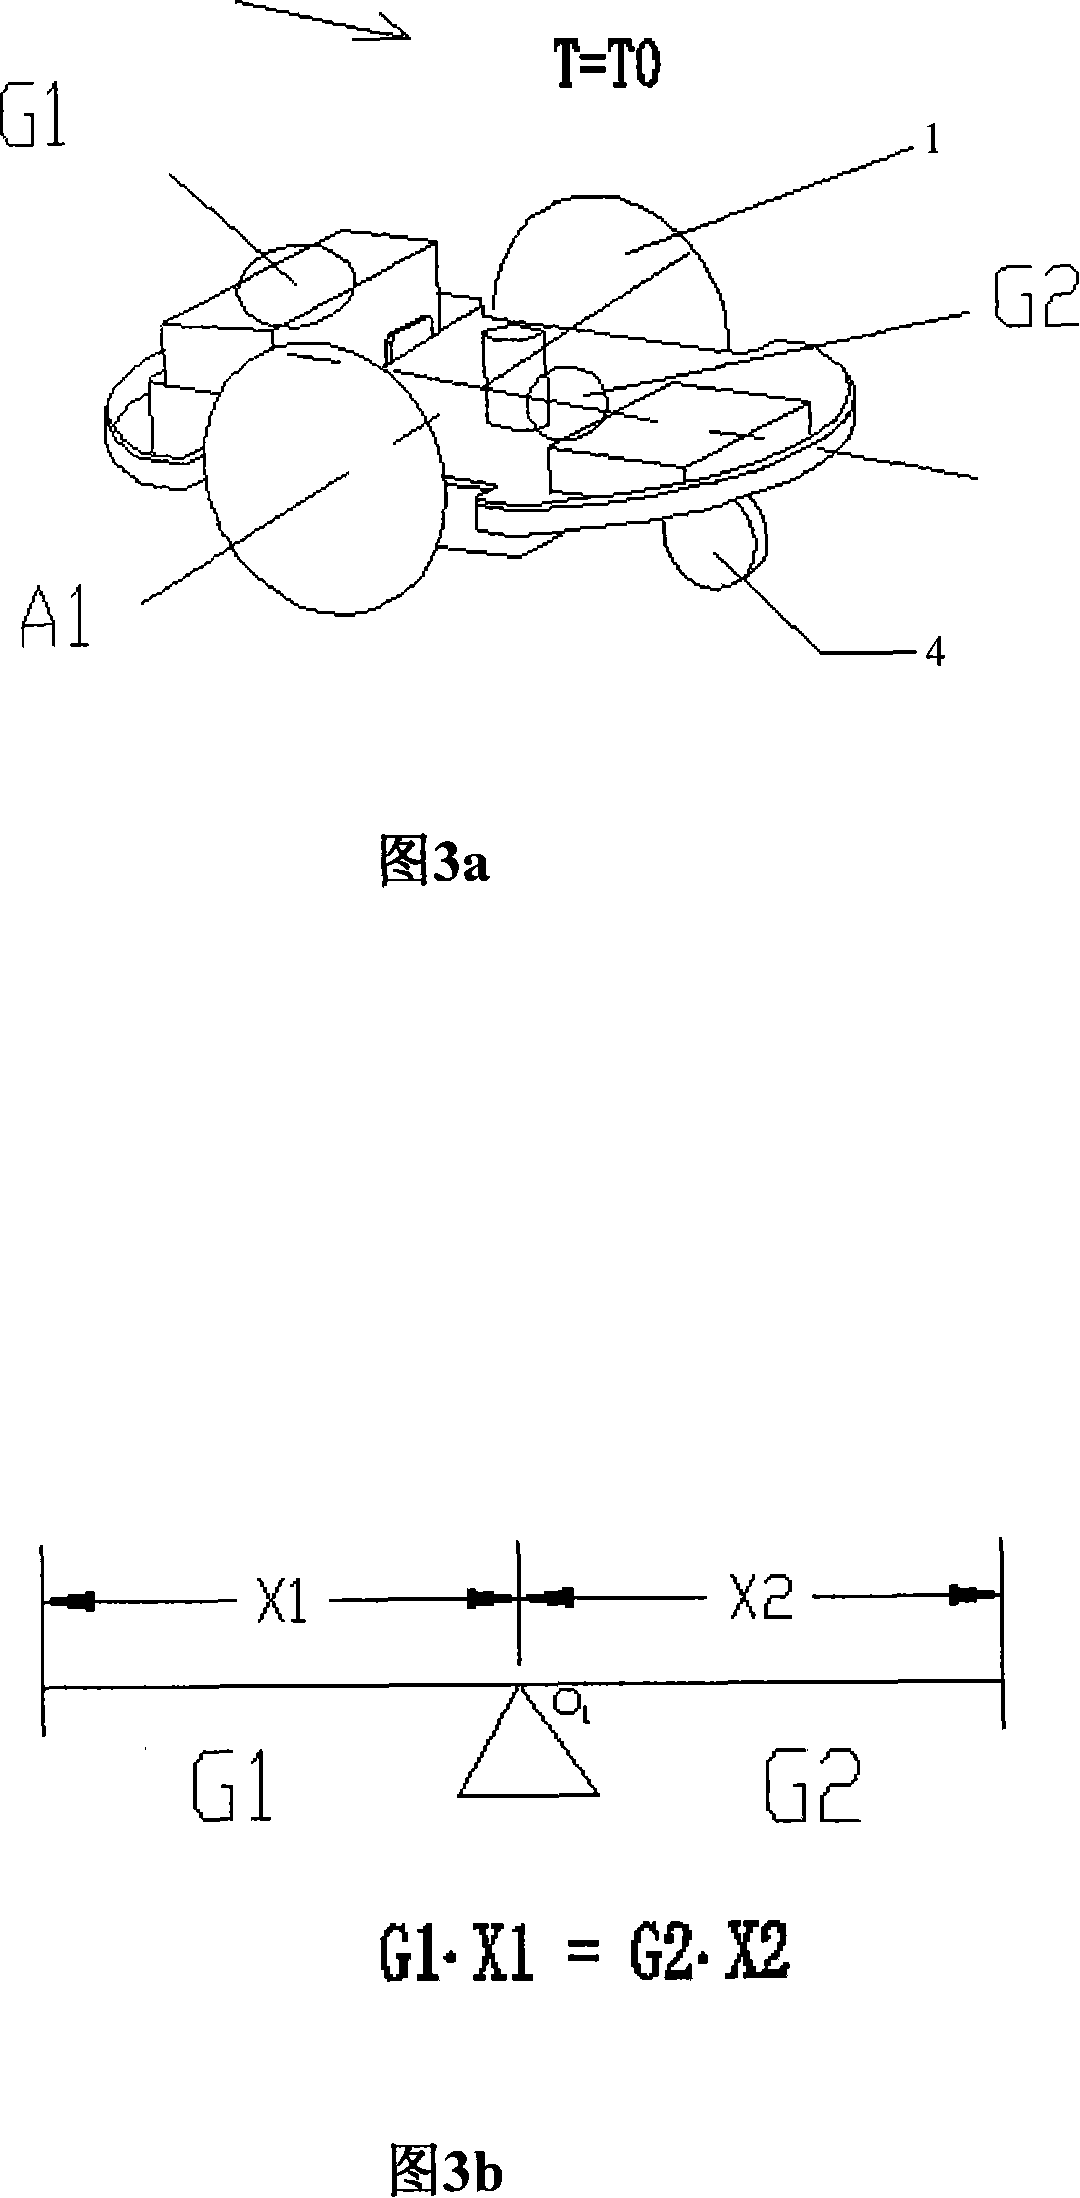 Arrangement method of grass cutter barycenter